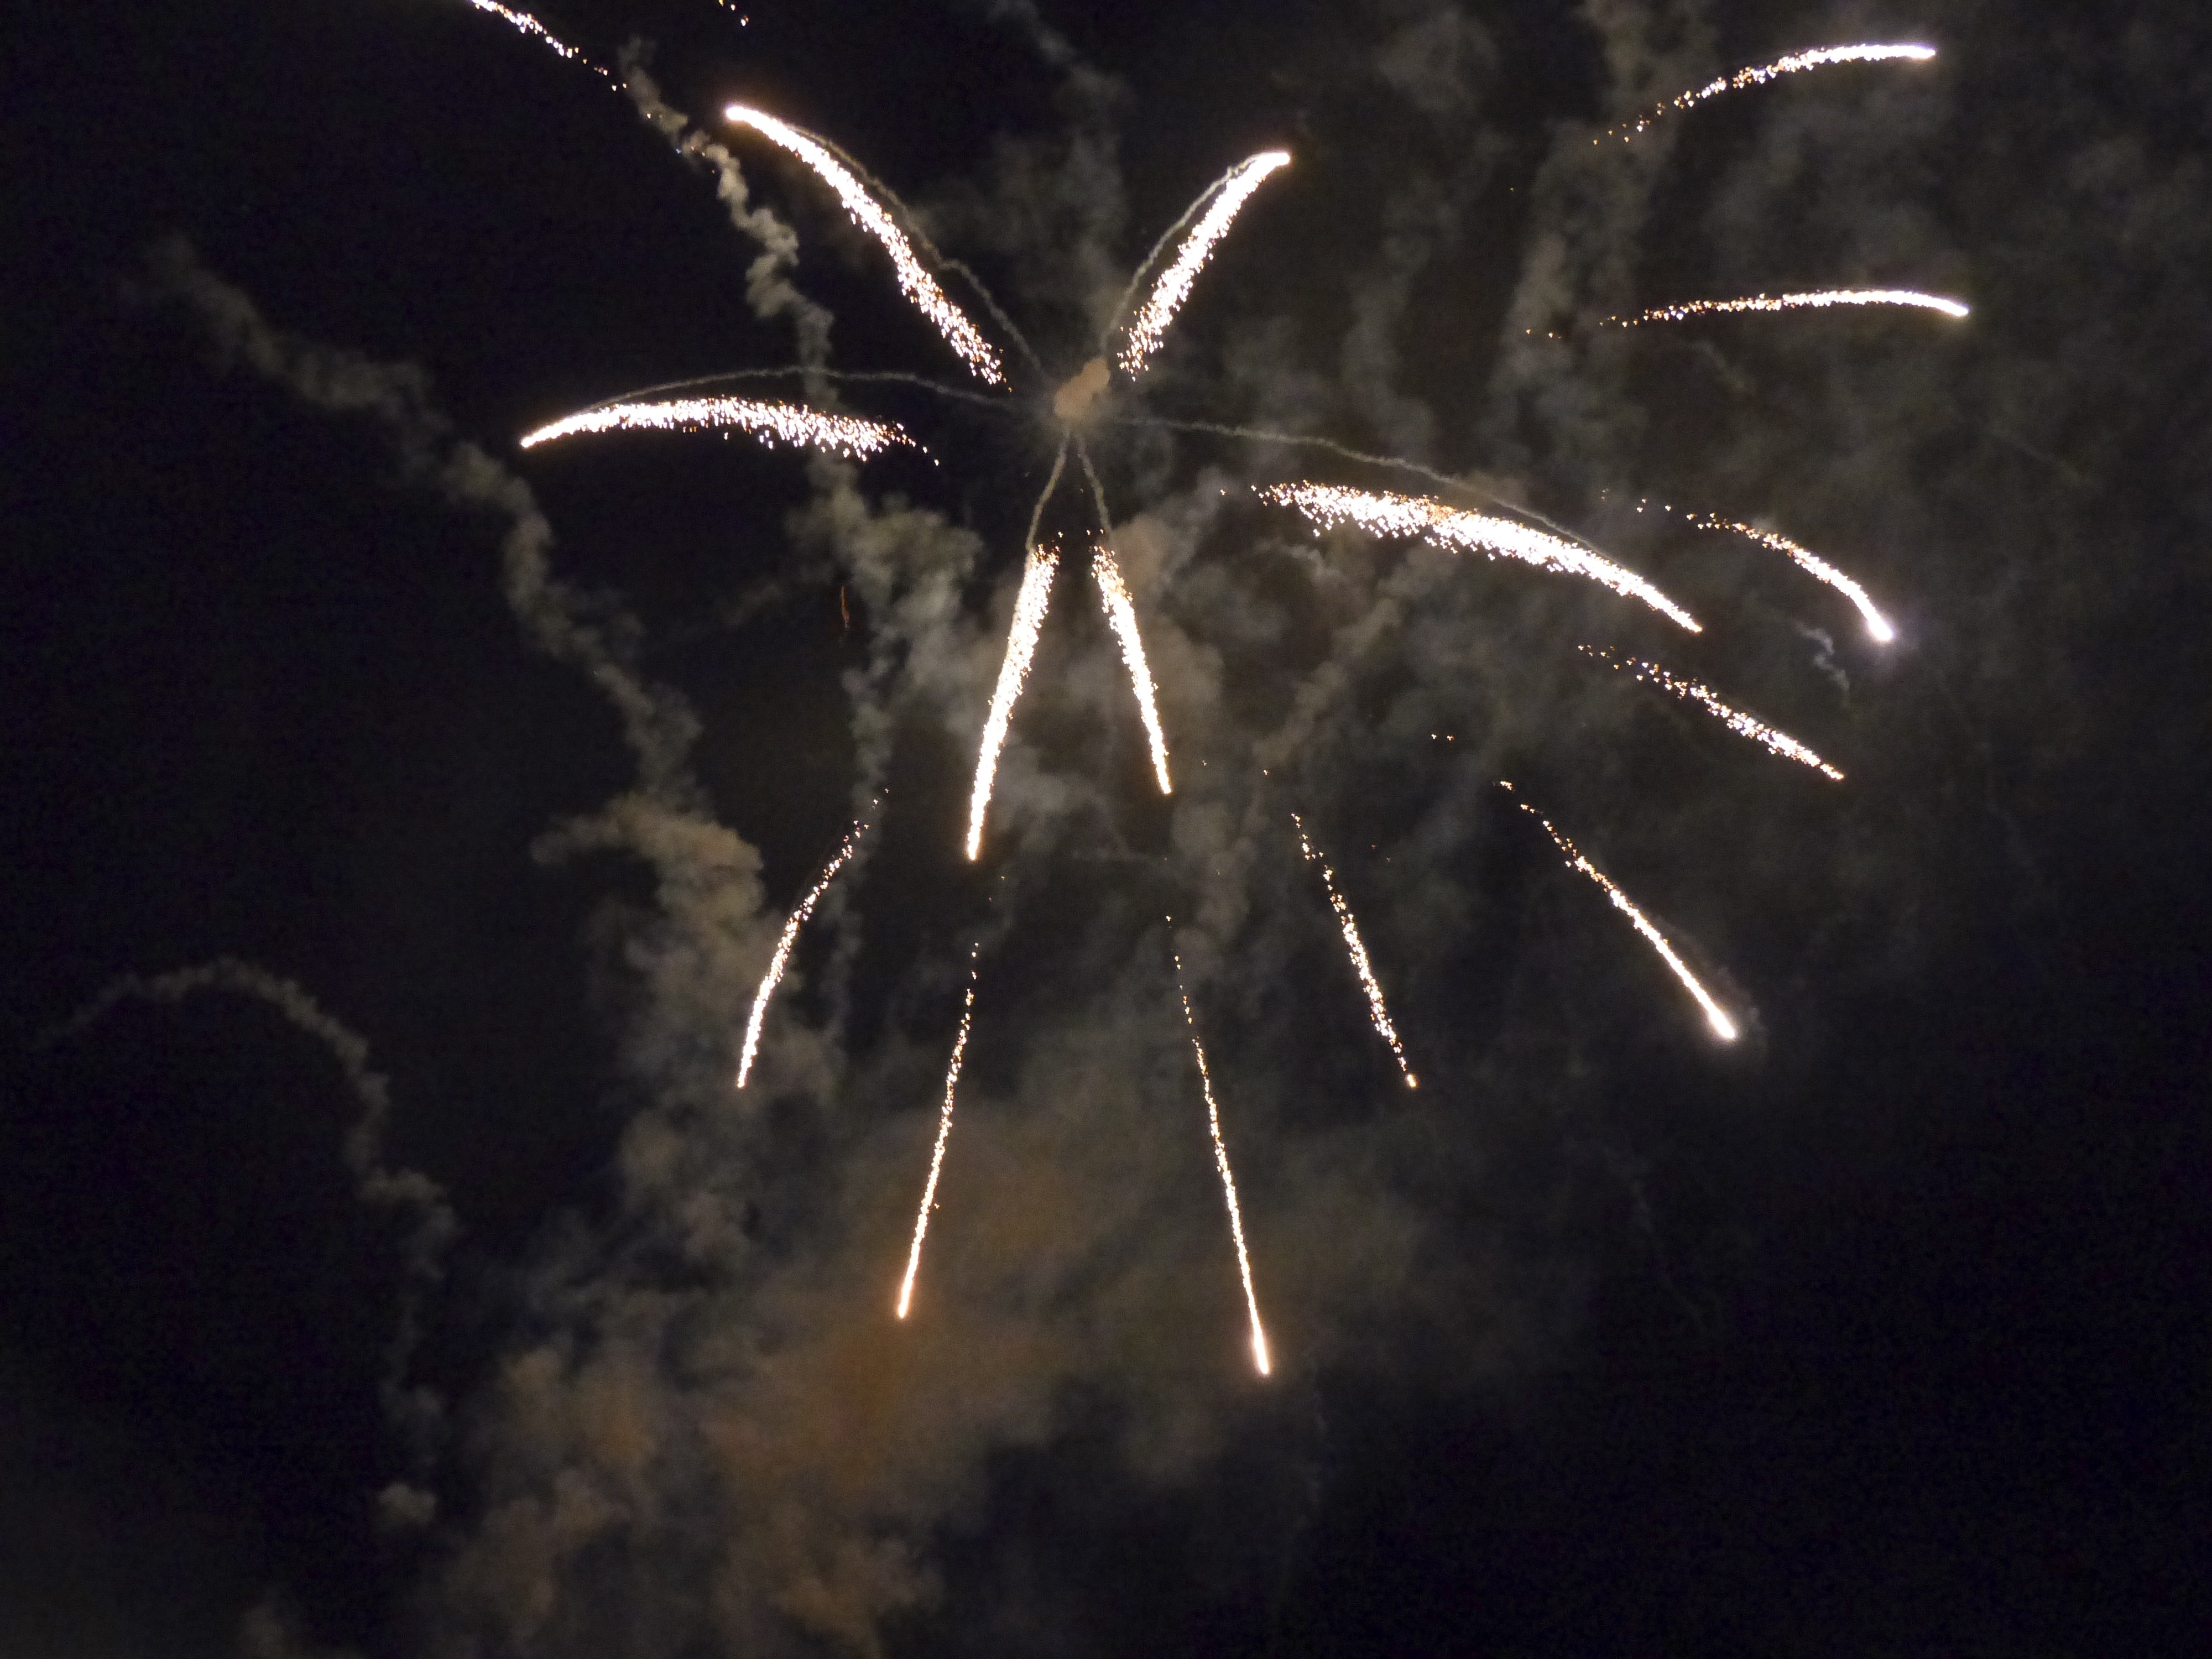 Sylvester, Fireworks, Rockets, Fire, firework display, firework - man made object